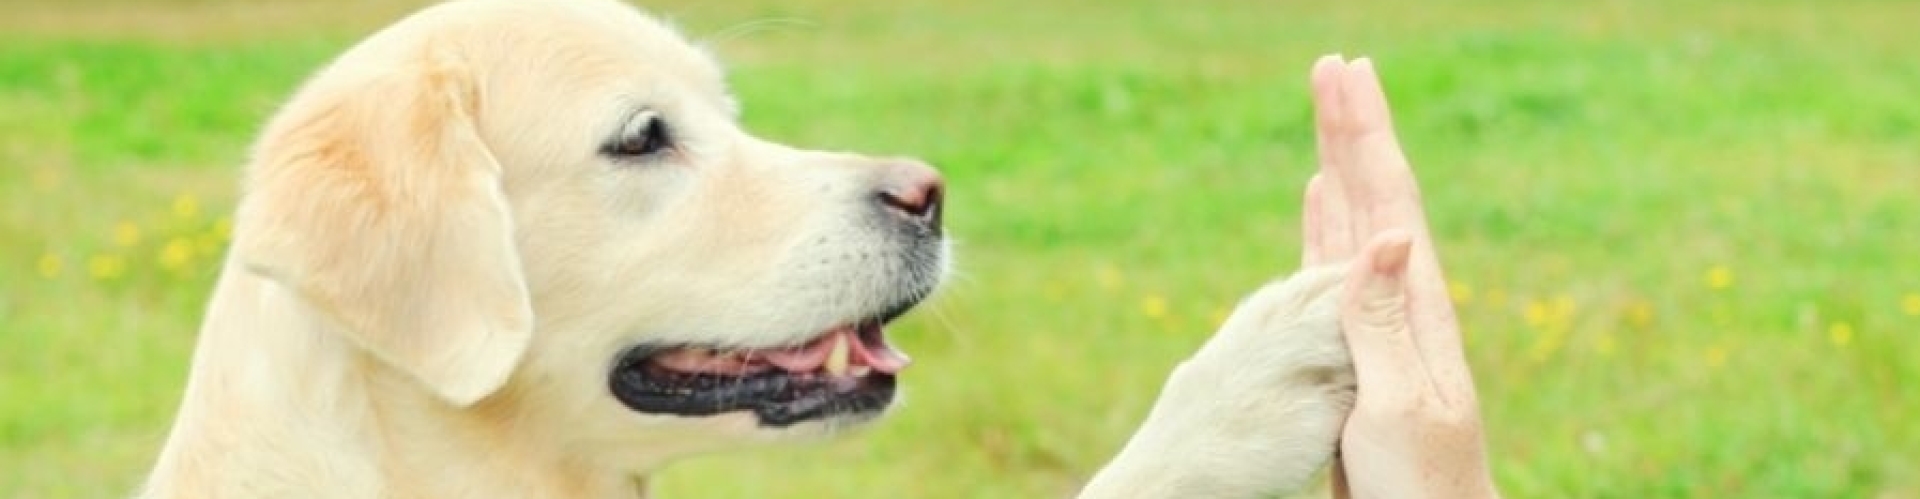 Vindt hier informatie over hondengedrag en hondenopvoeding